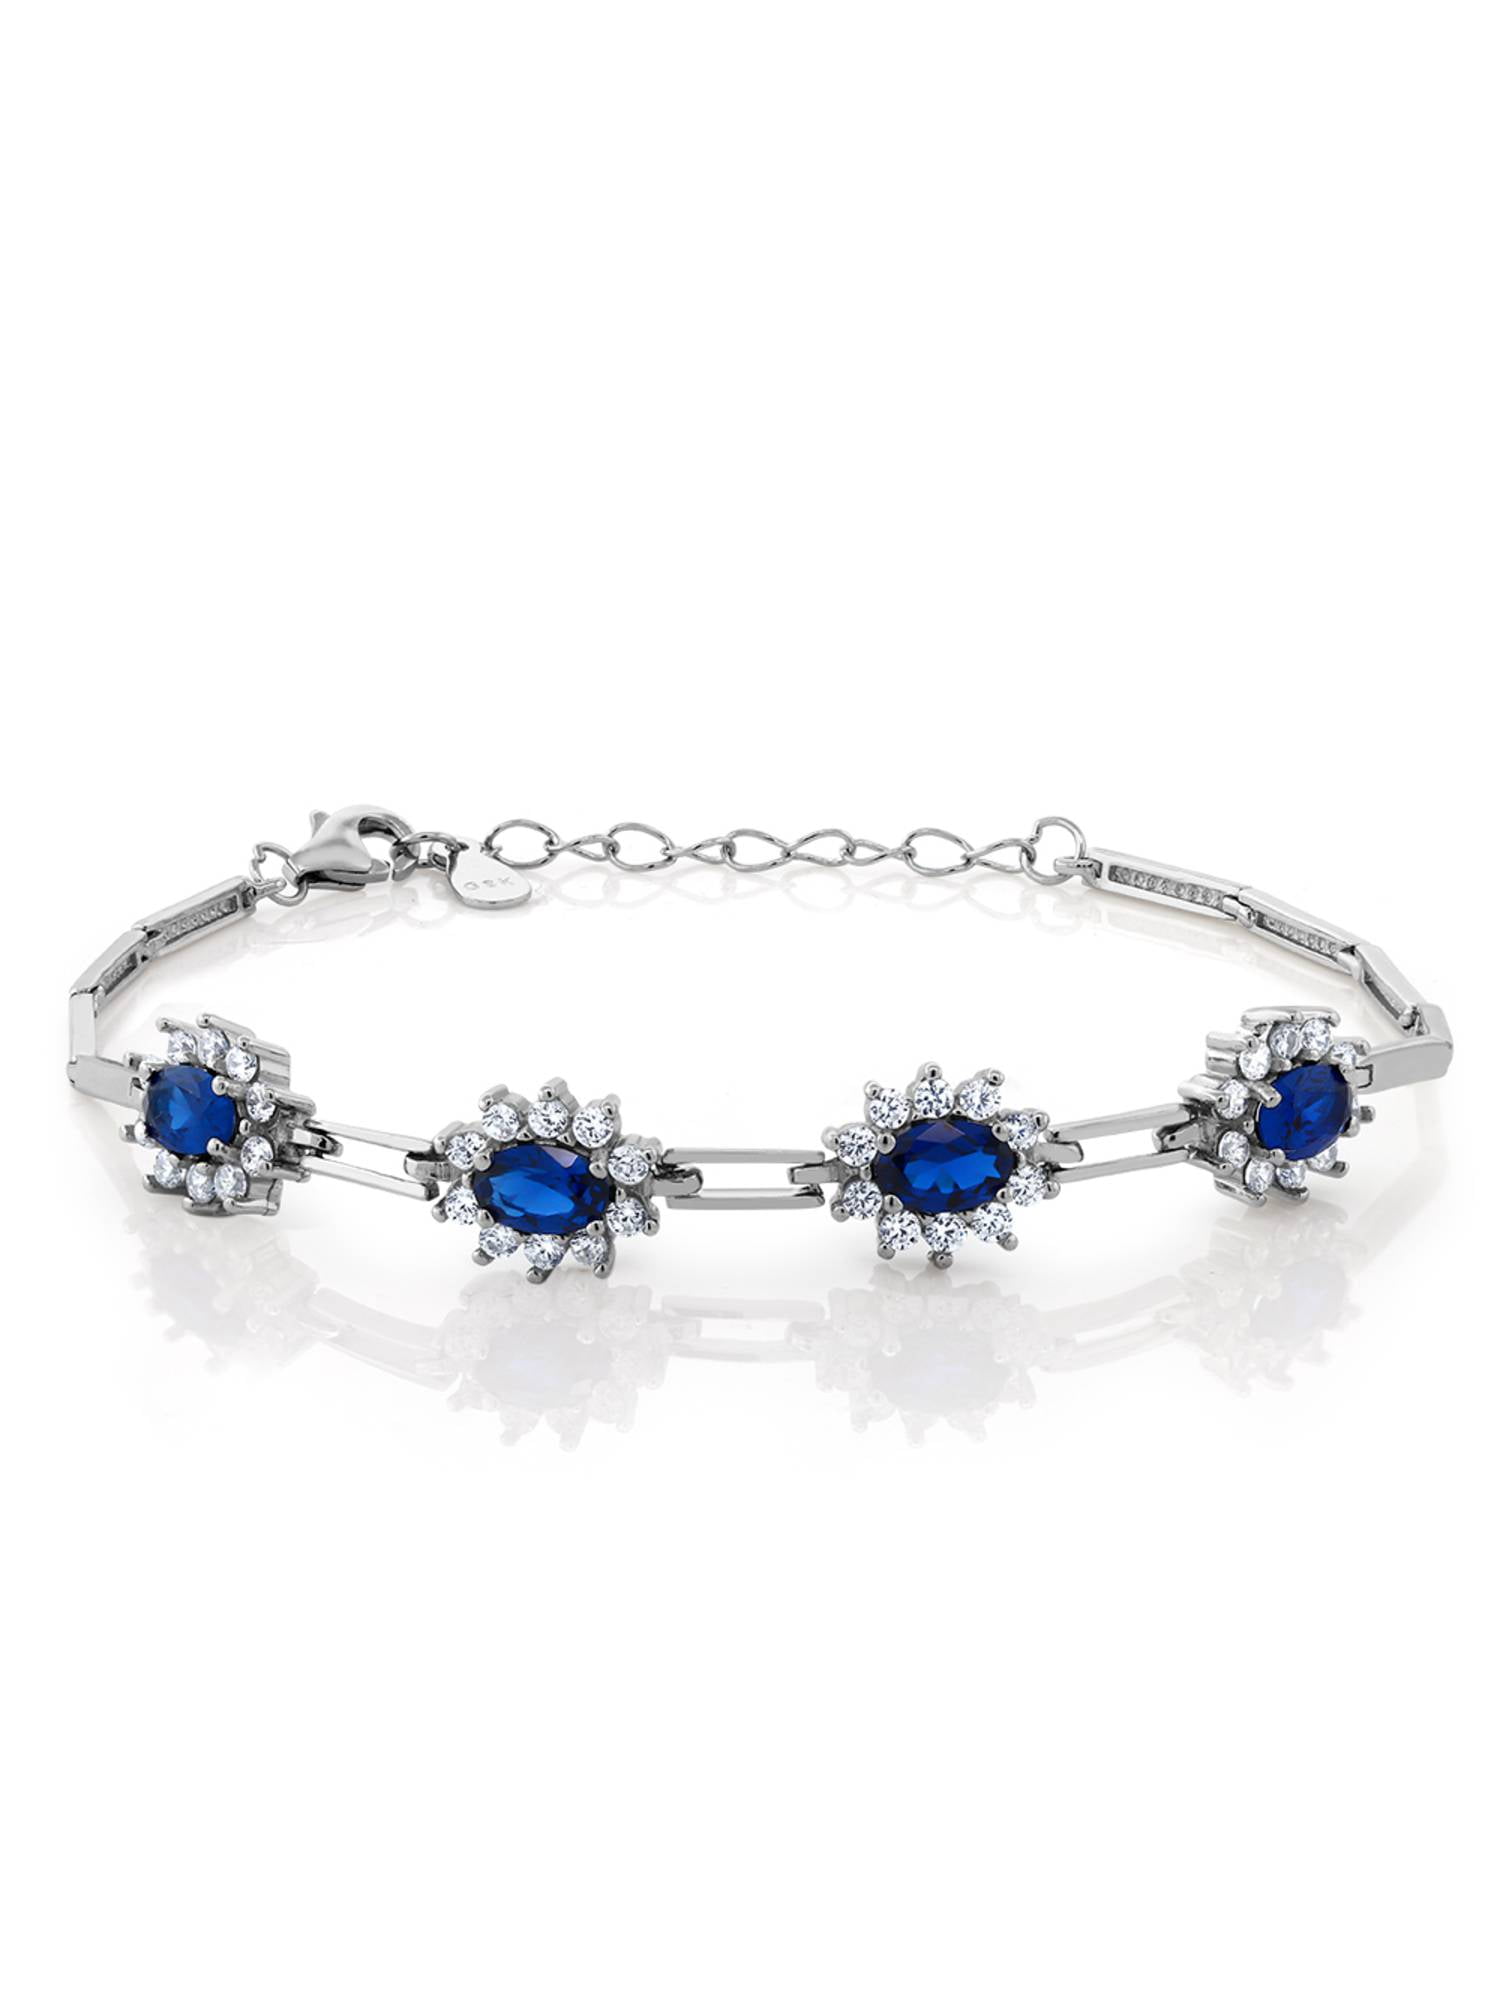 Blue Sapphire 925 Sterling Silver Beaded Bracelet Women Gemstone Christmas Gift 